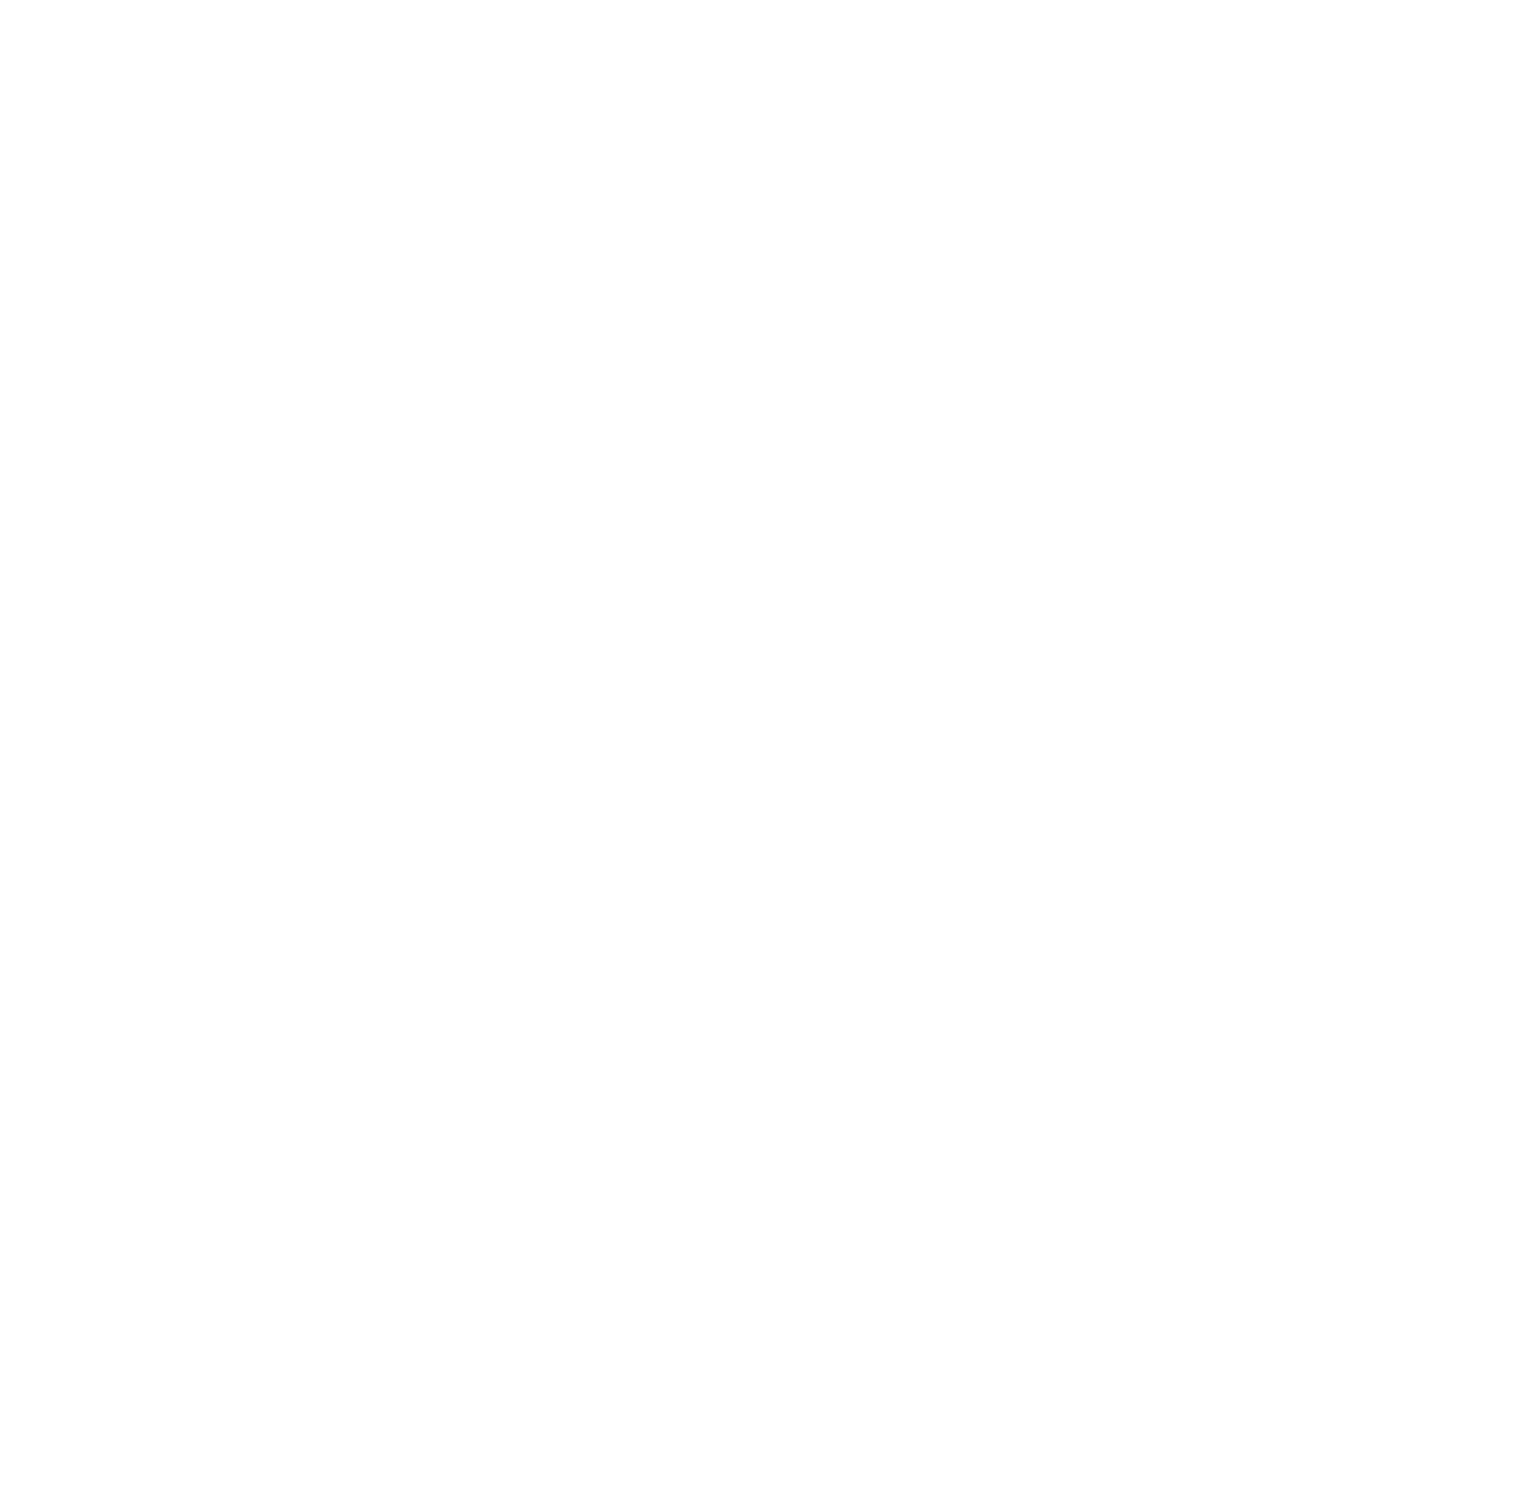 Exclusive Networks logo pour fonds sombres (PNG transparent)